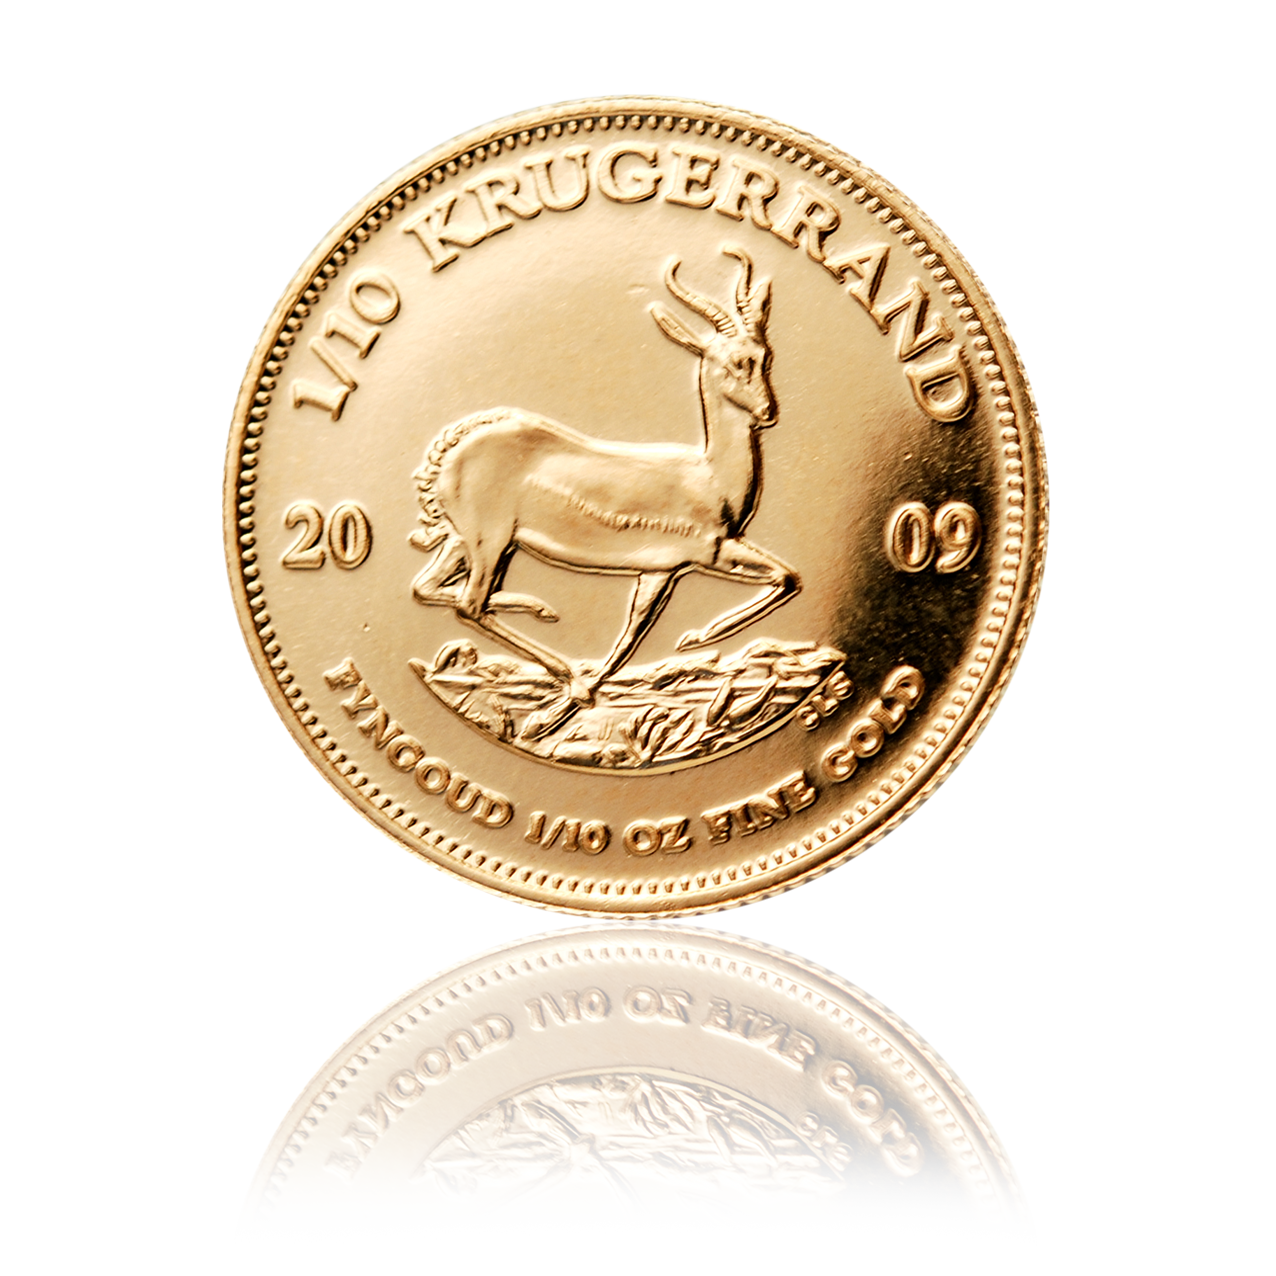 Krugerrand (Krügerrand) - South Africa 1/10 oz gold coin